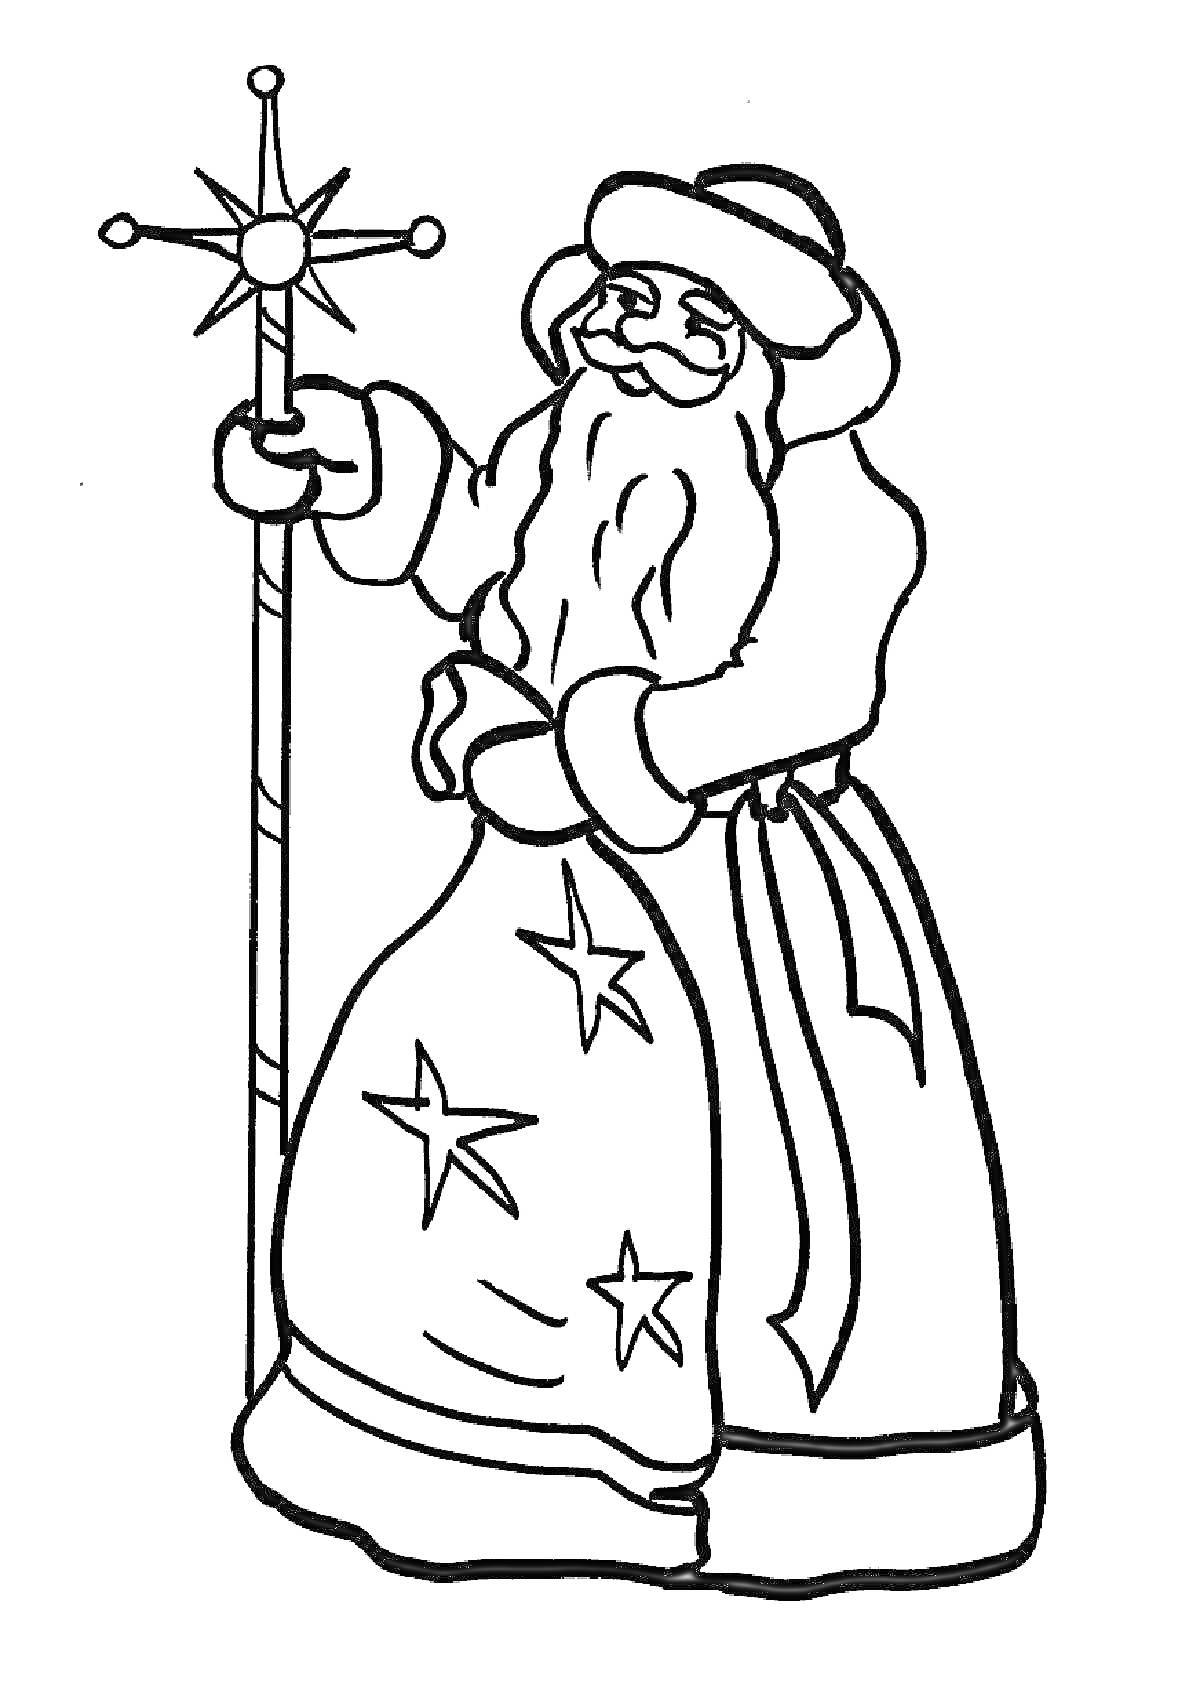 Мороз Иванович с посохом, звезда на посохе, шапка с отделкой, длинная борода, длинная шуба с вышивкой в виде звезд